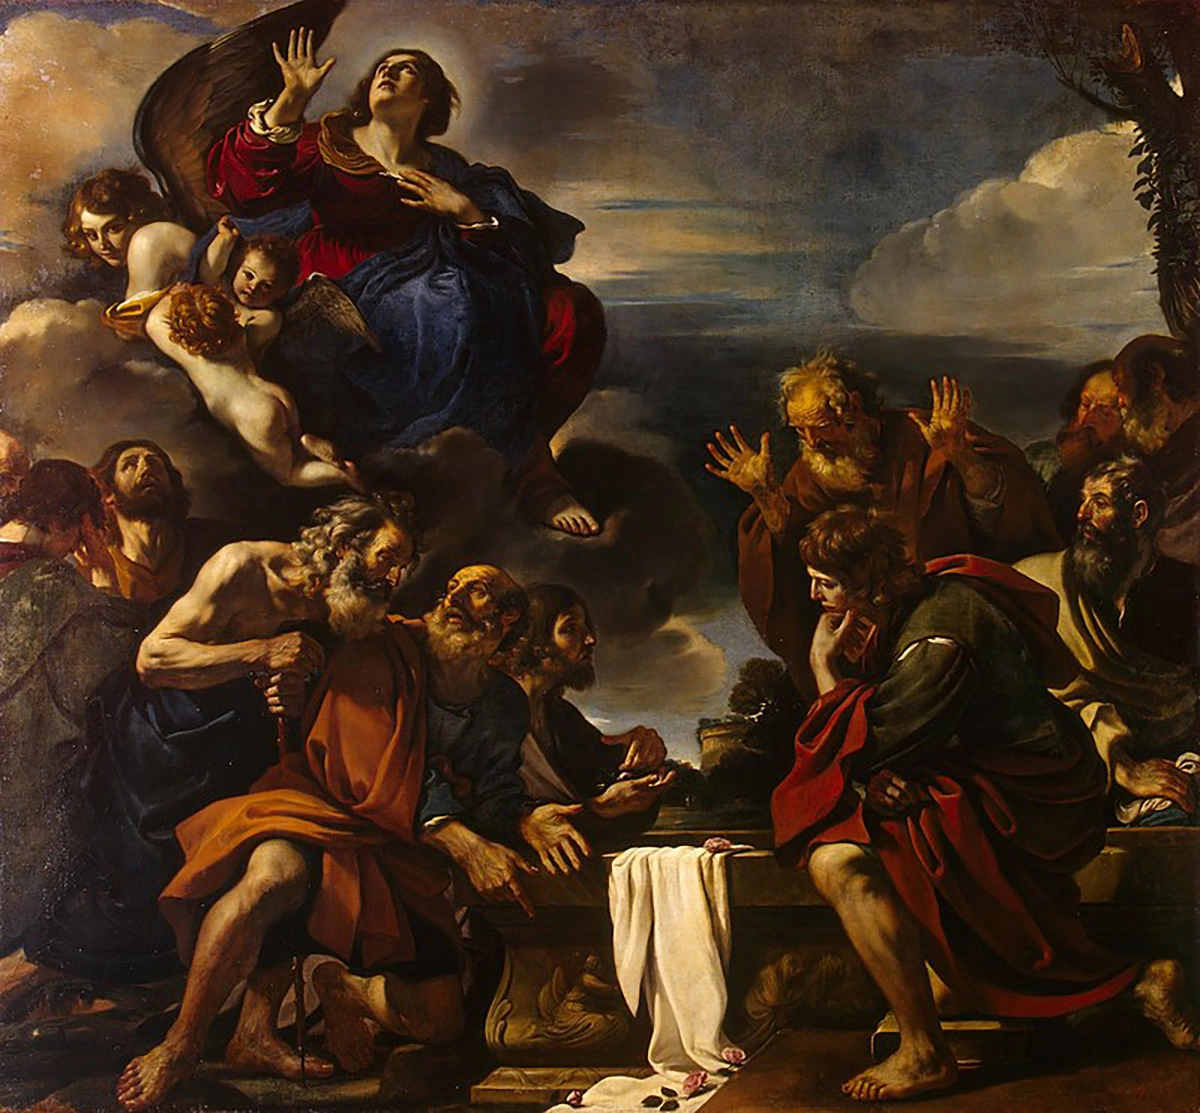 <p>Вознесение Марии.&nbsp;Гверчино. Около 1623 года</p>

<p></p>